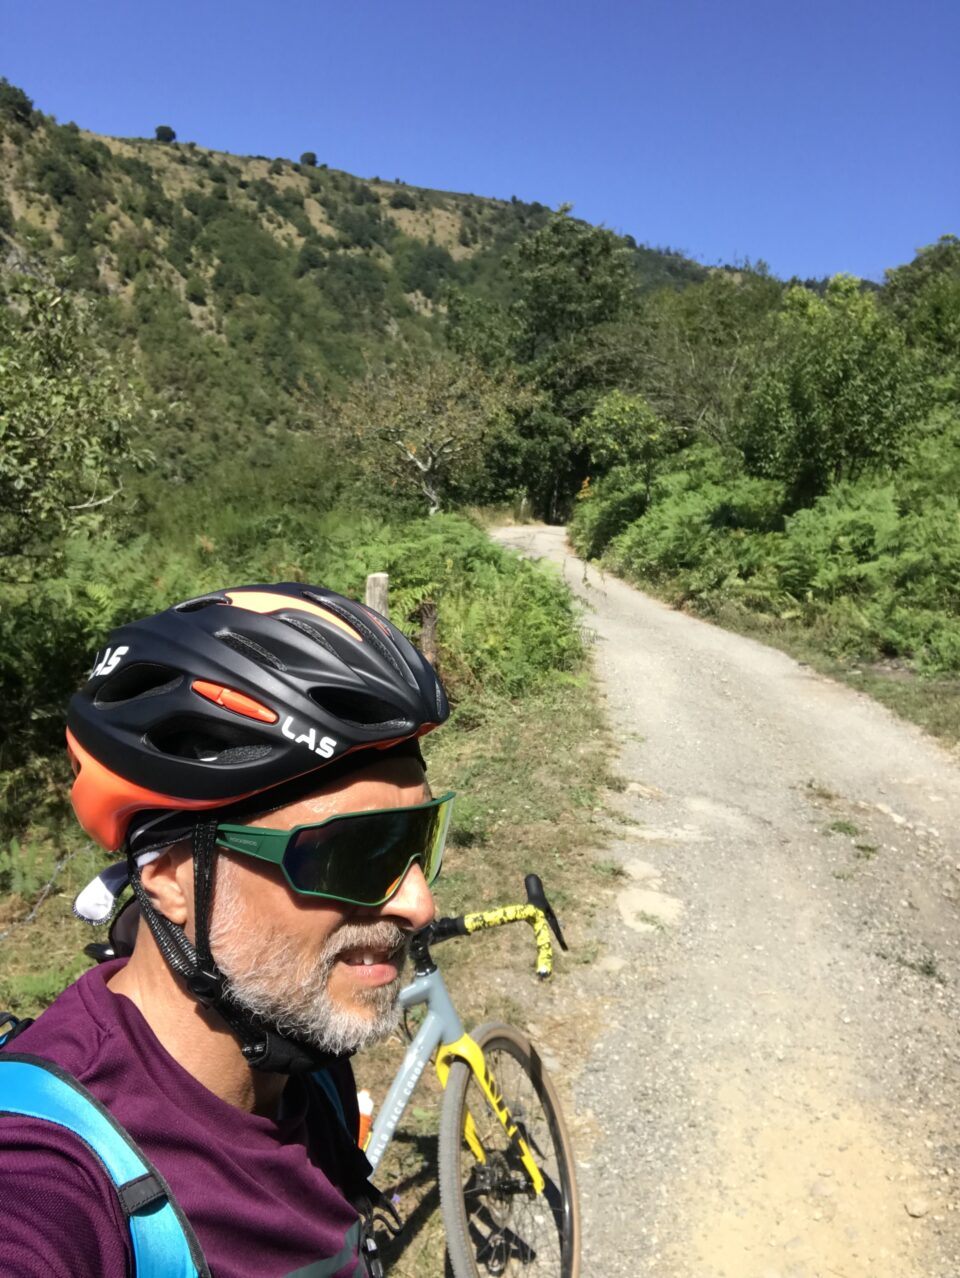 Le biciclette di socrate in pausa sul percorso gravel in Alta Val di Vara